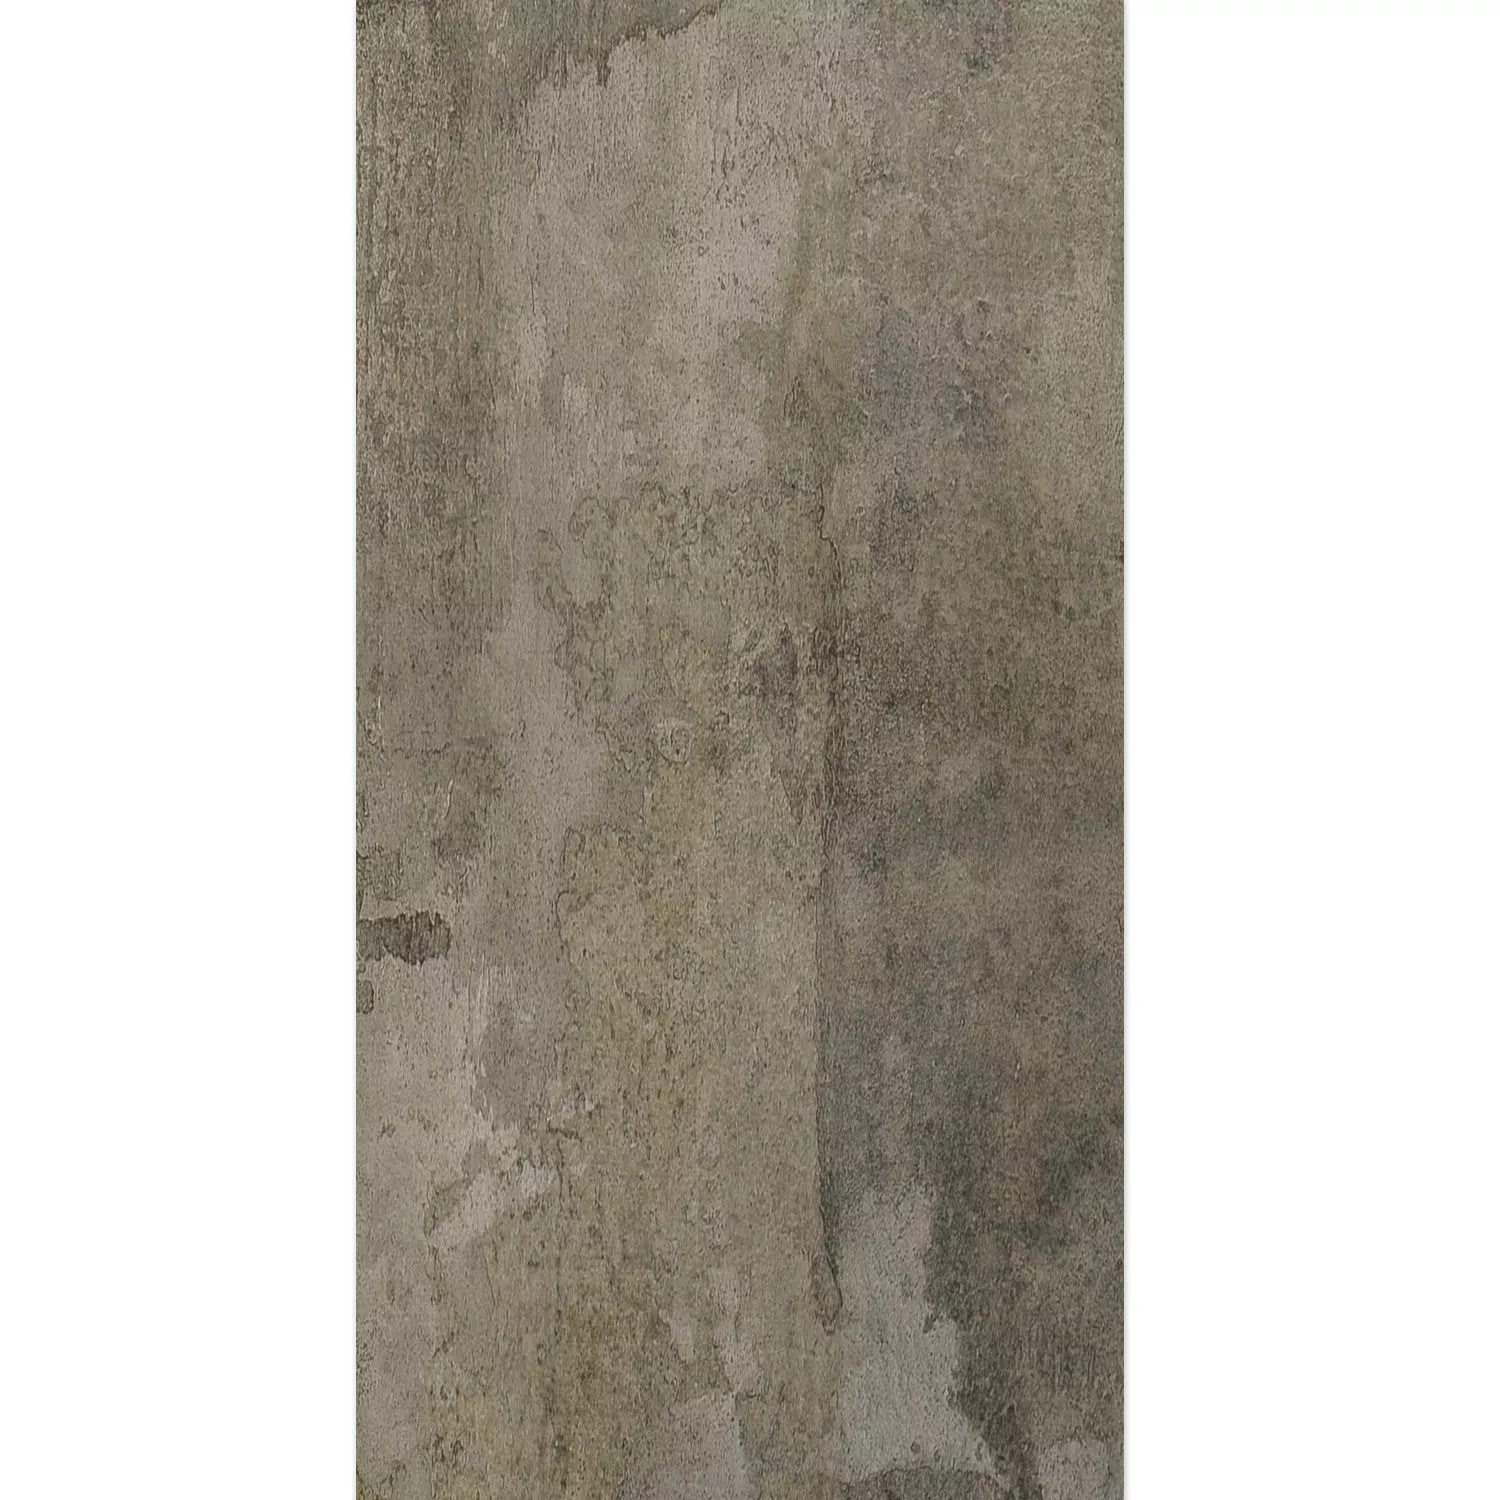 Próbka Płytki Podłogowe Haarlem Graphit 45x90cm